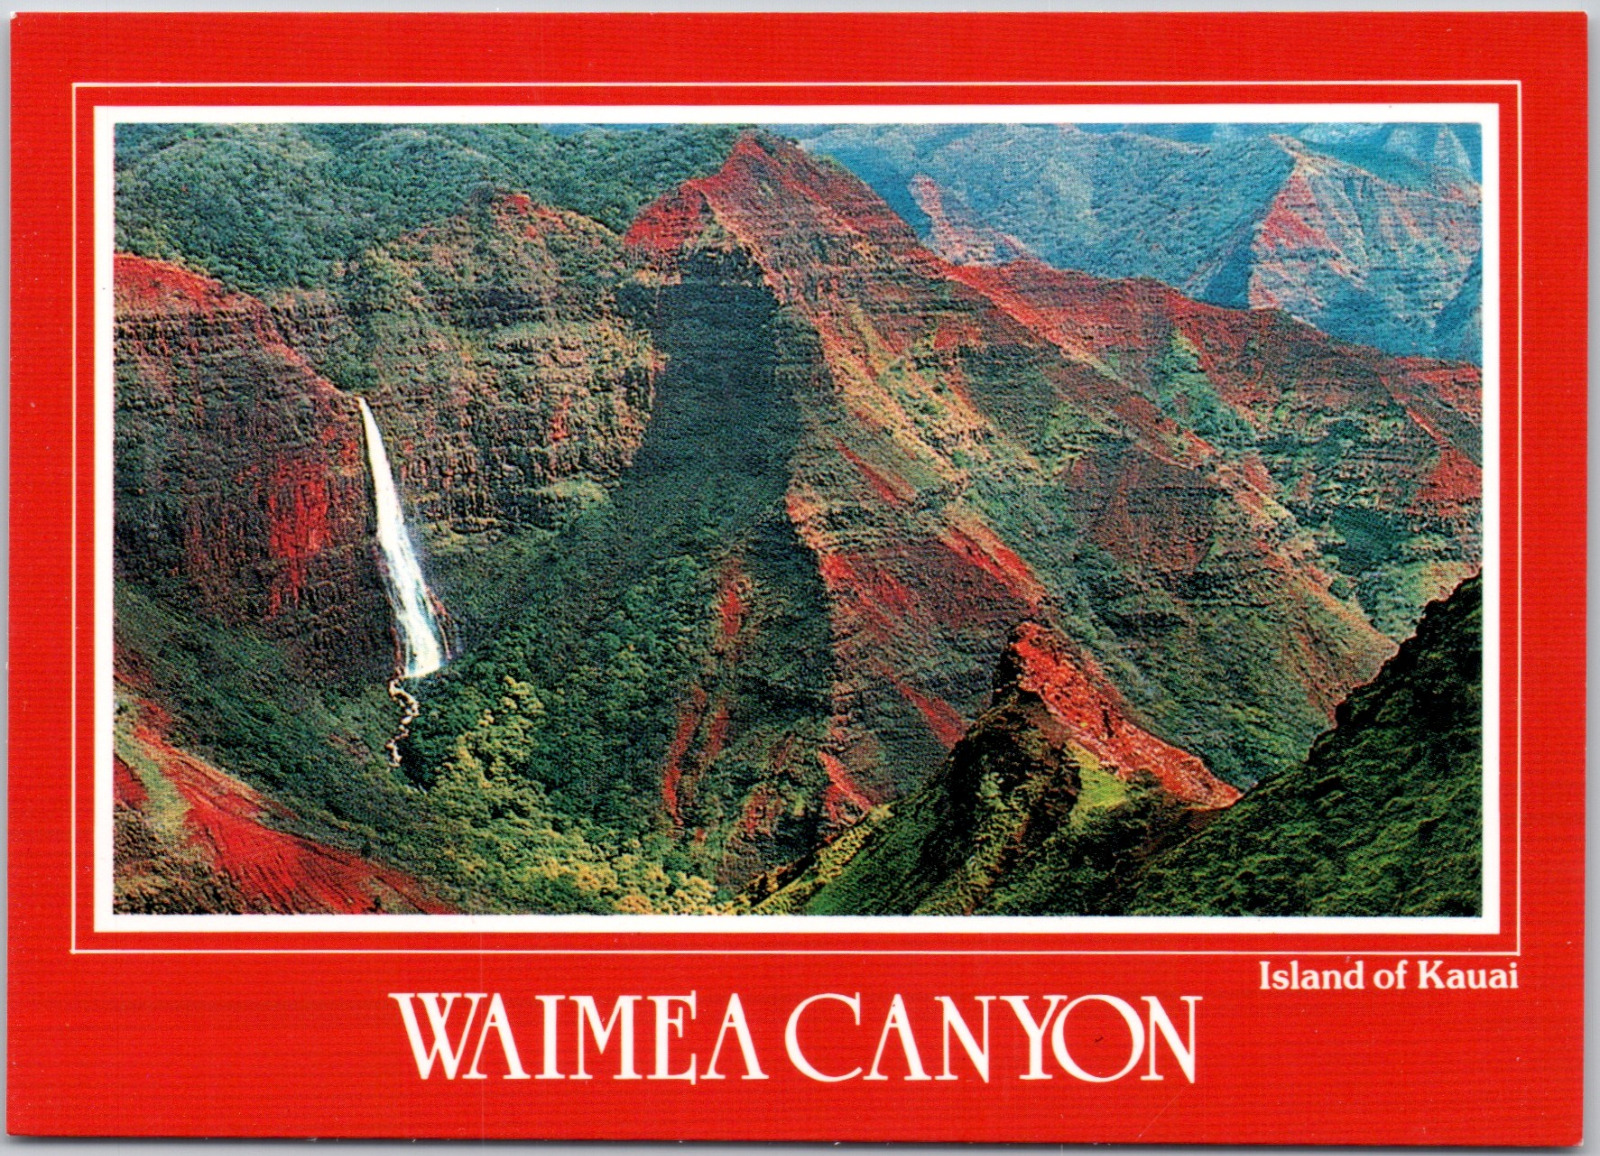 Waimea Canyon Island Of Kauai Hawaii Grand canyon Of Pacific Vintage Postcard